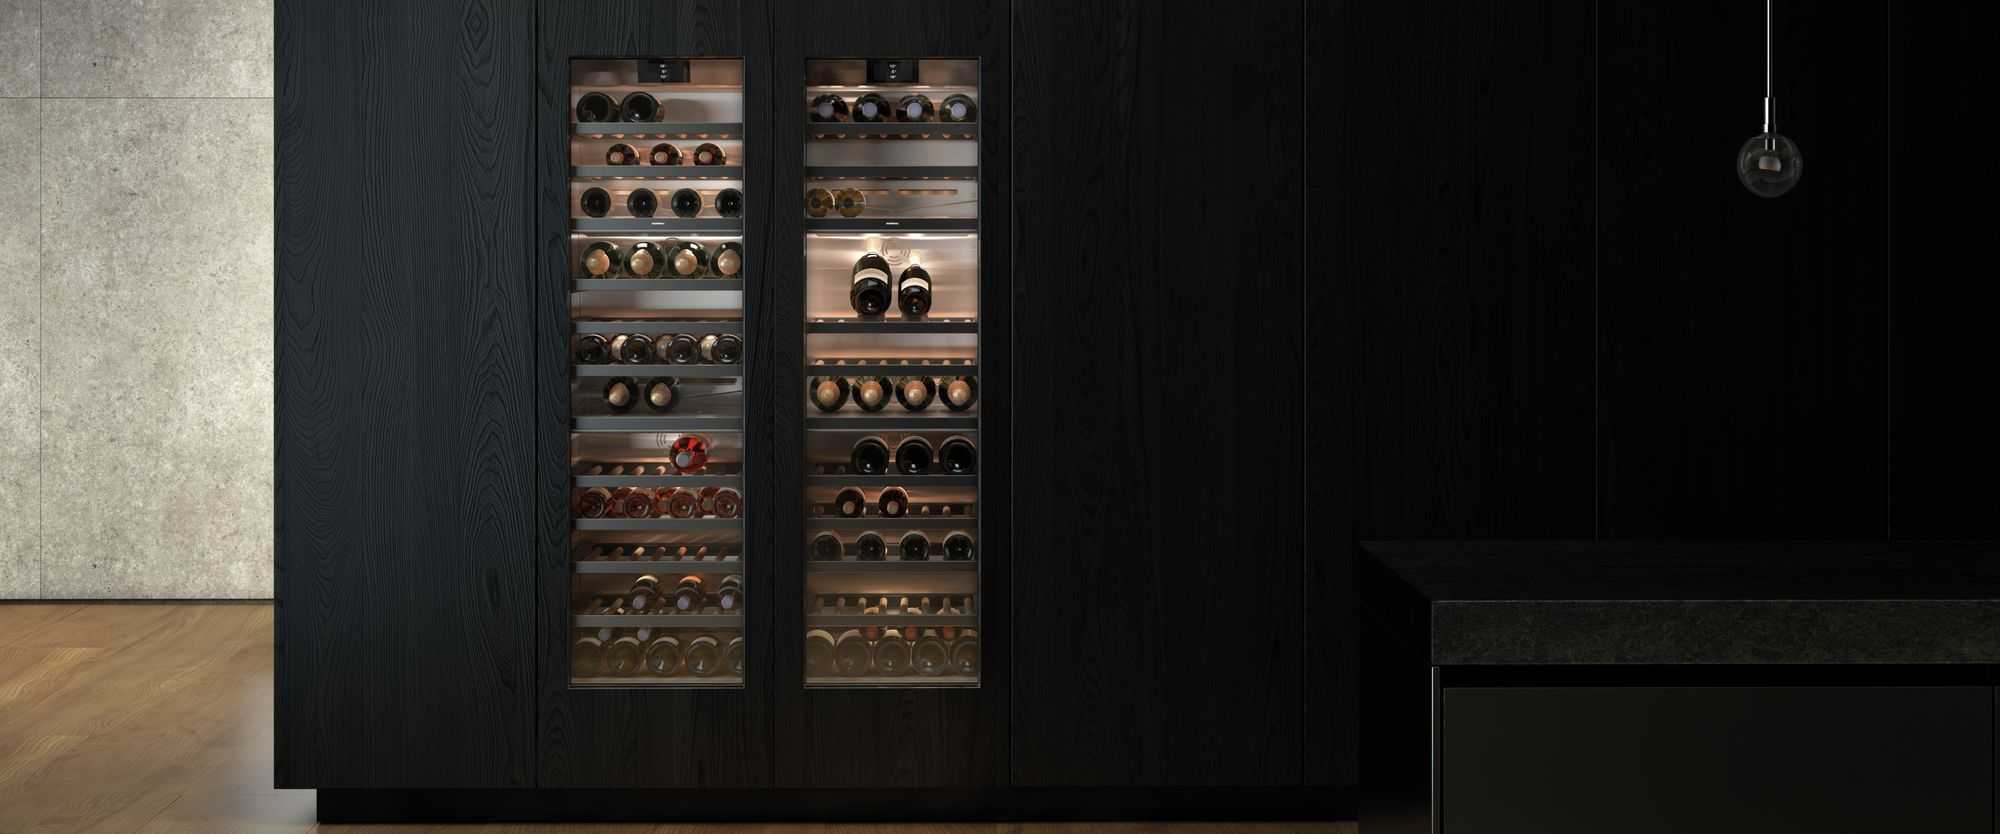 Gaggenau Wine Cabinets by FCI London